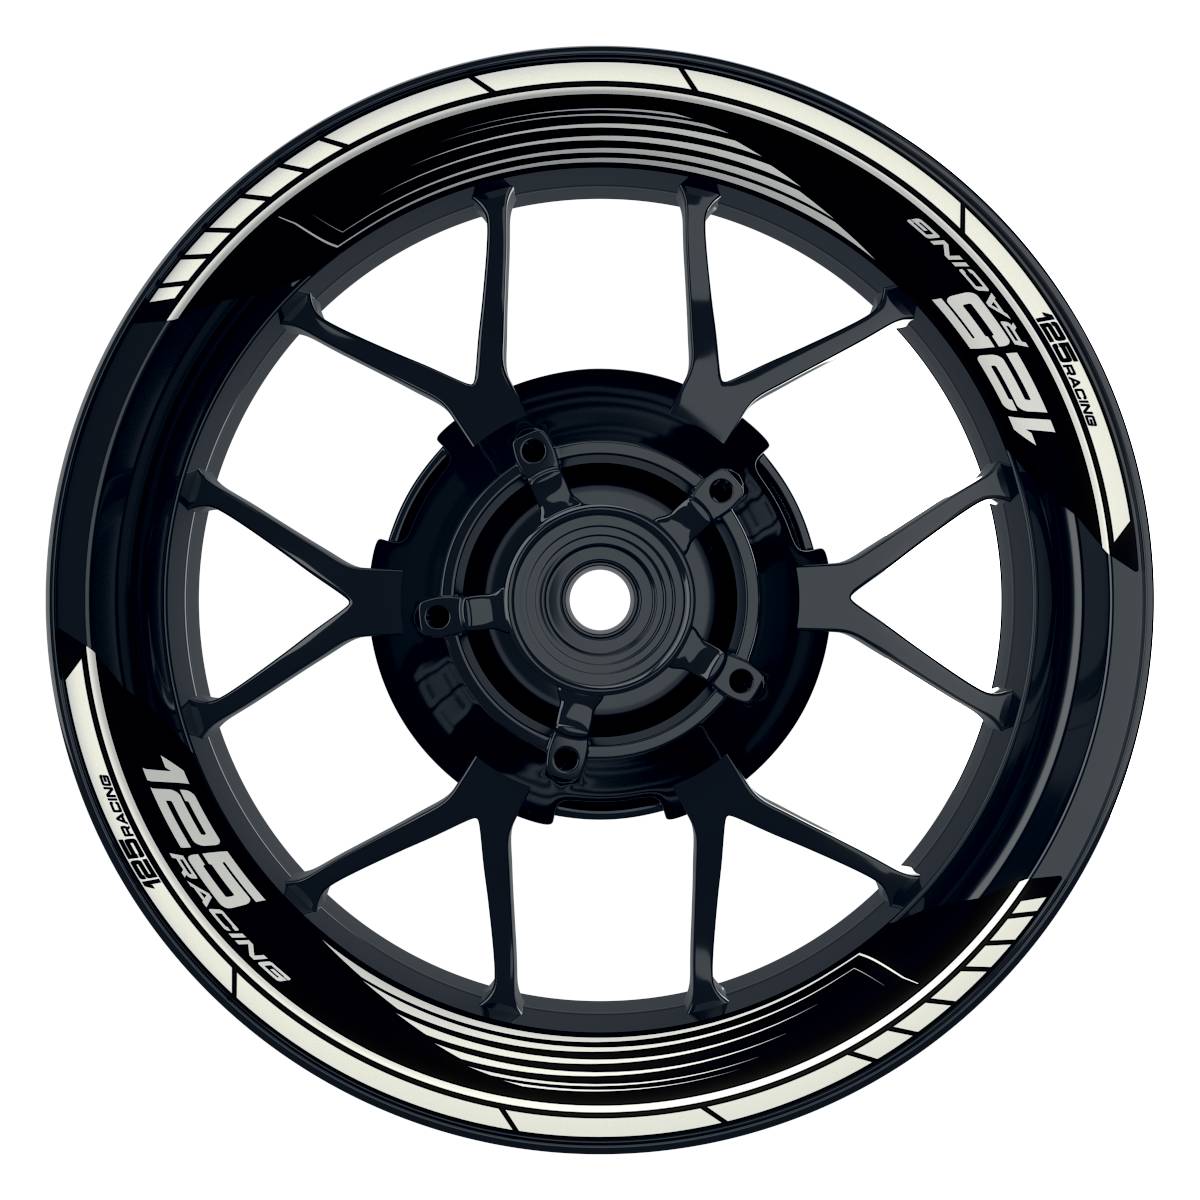 KTM Racing 125 SAW schwarz weiss Frontansicht